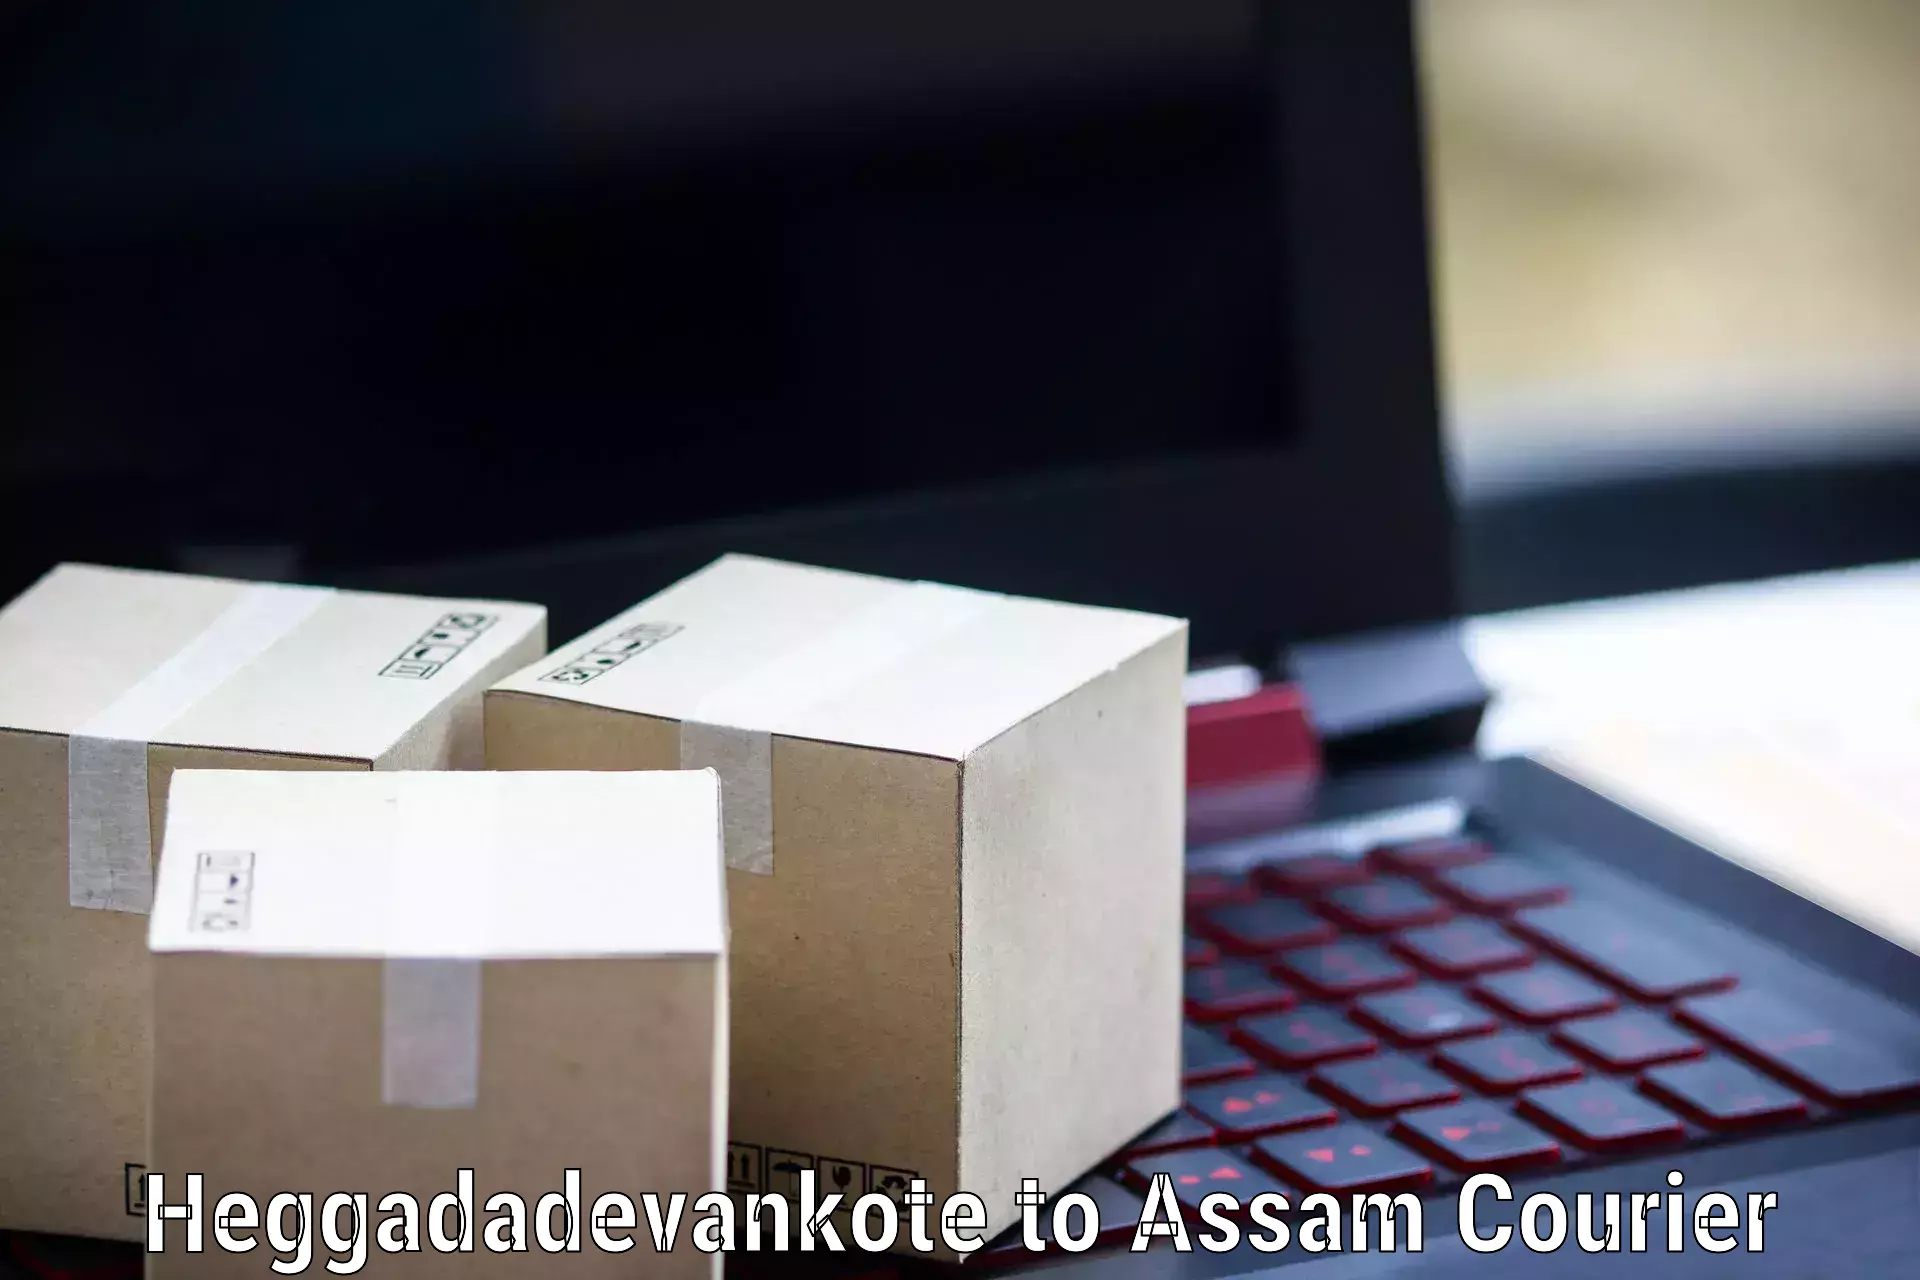 Modern courier technology Heggadadevankote to IIT Guwahati